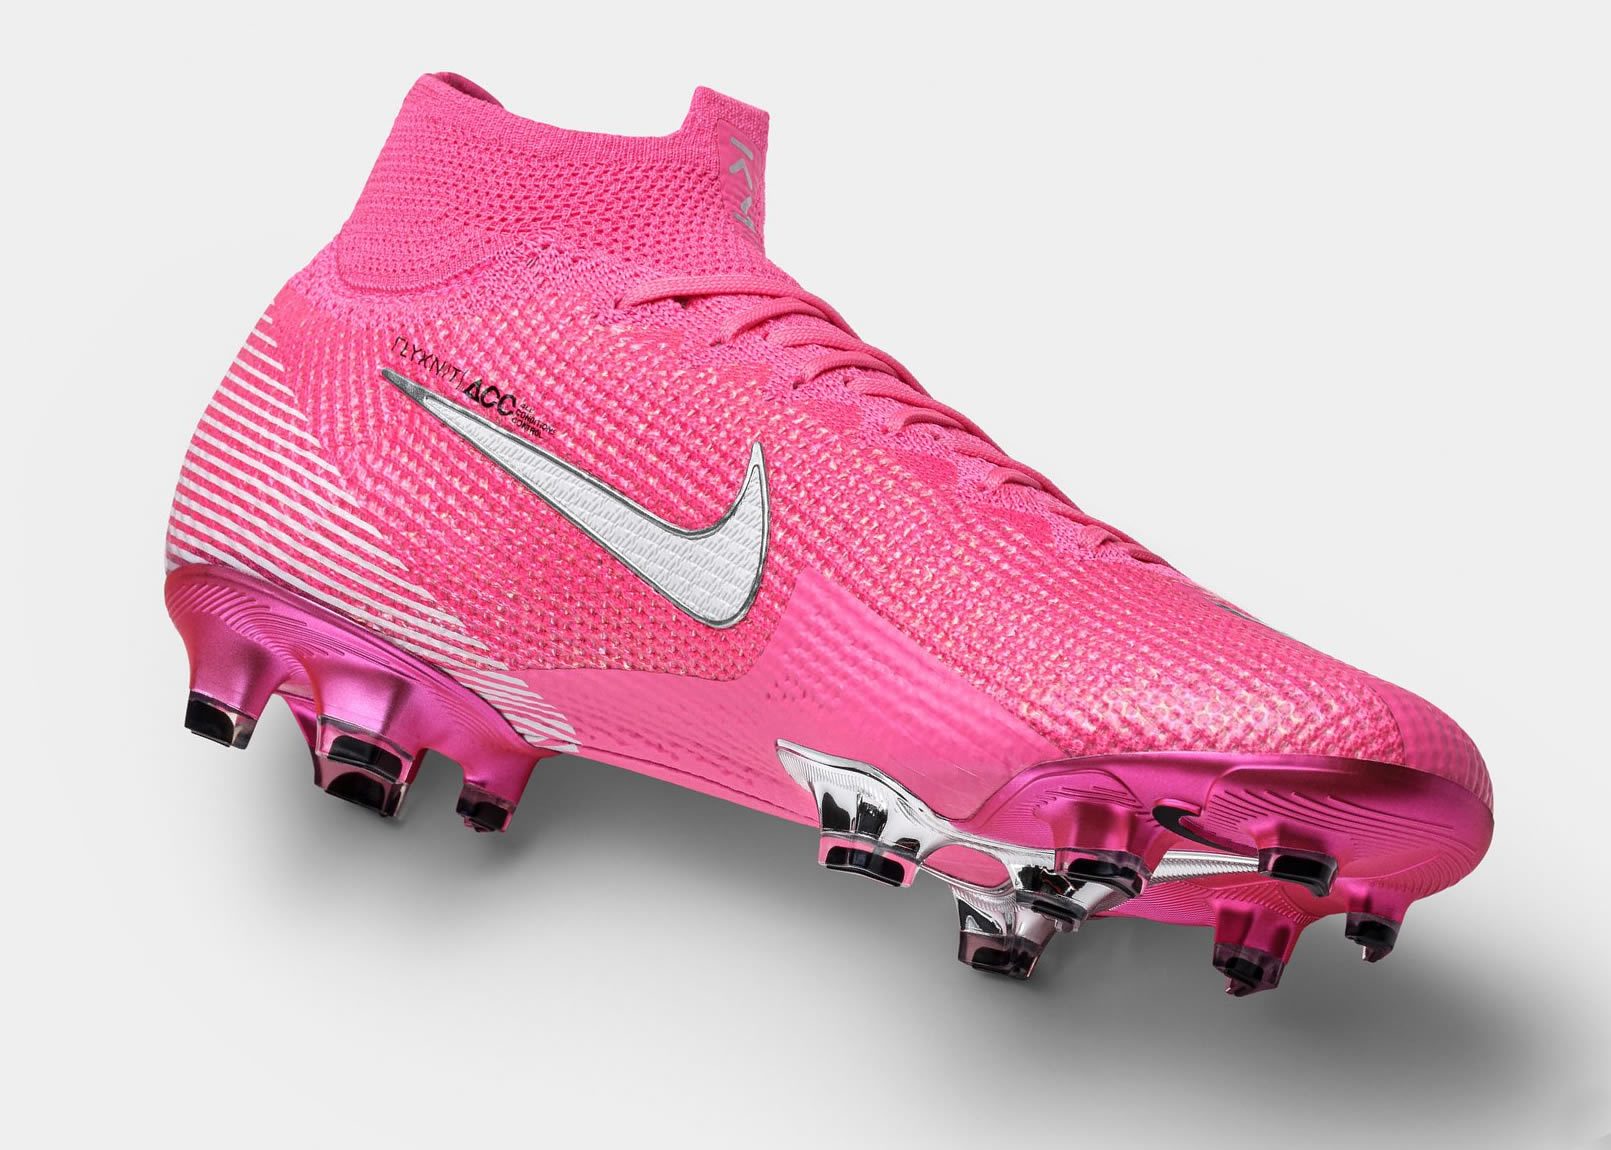 zapatos de futbol nike mercurial rosados